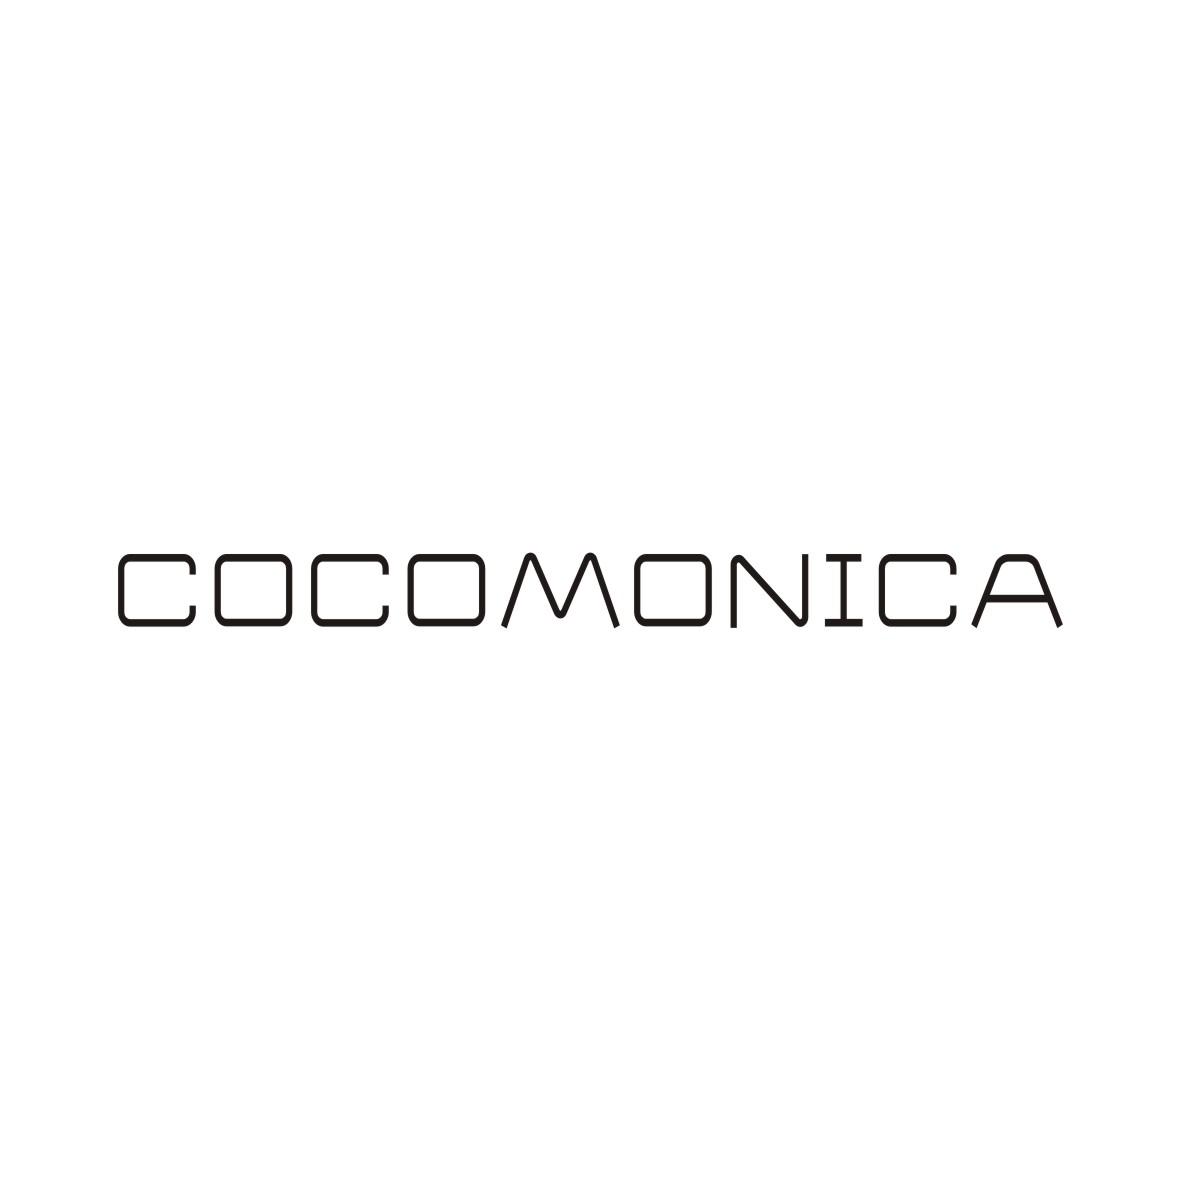 35类-广告销售COCOMONICA商标转让